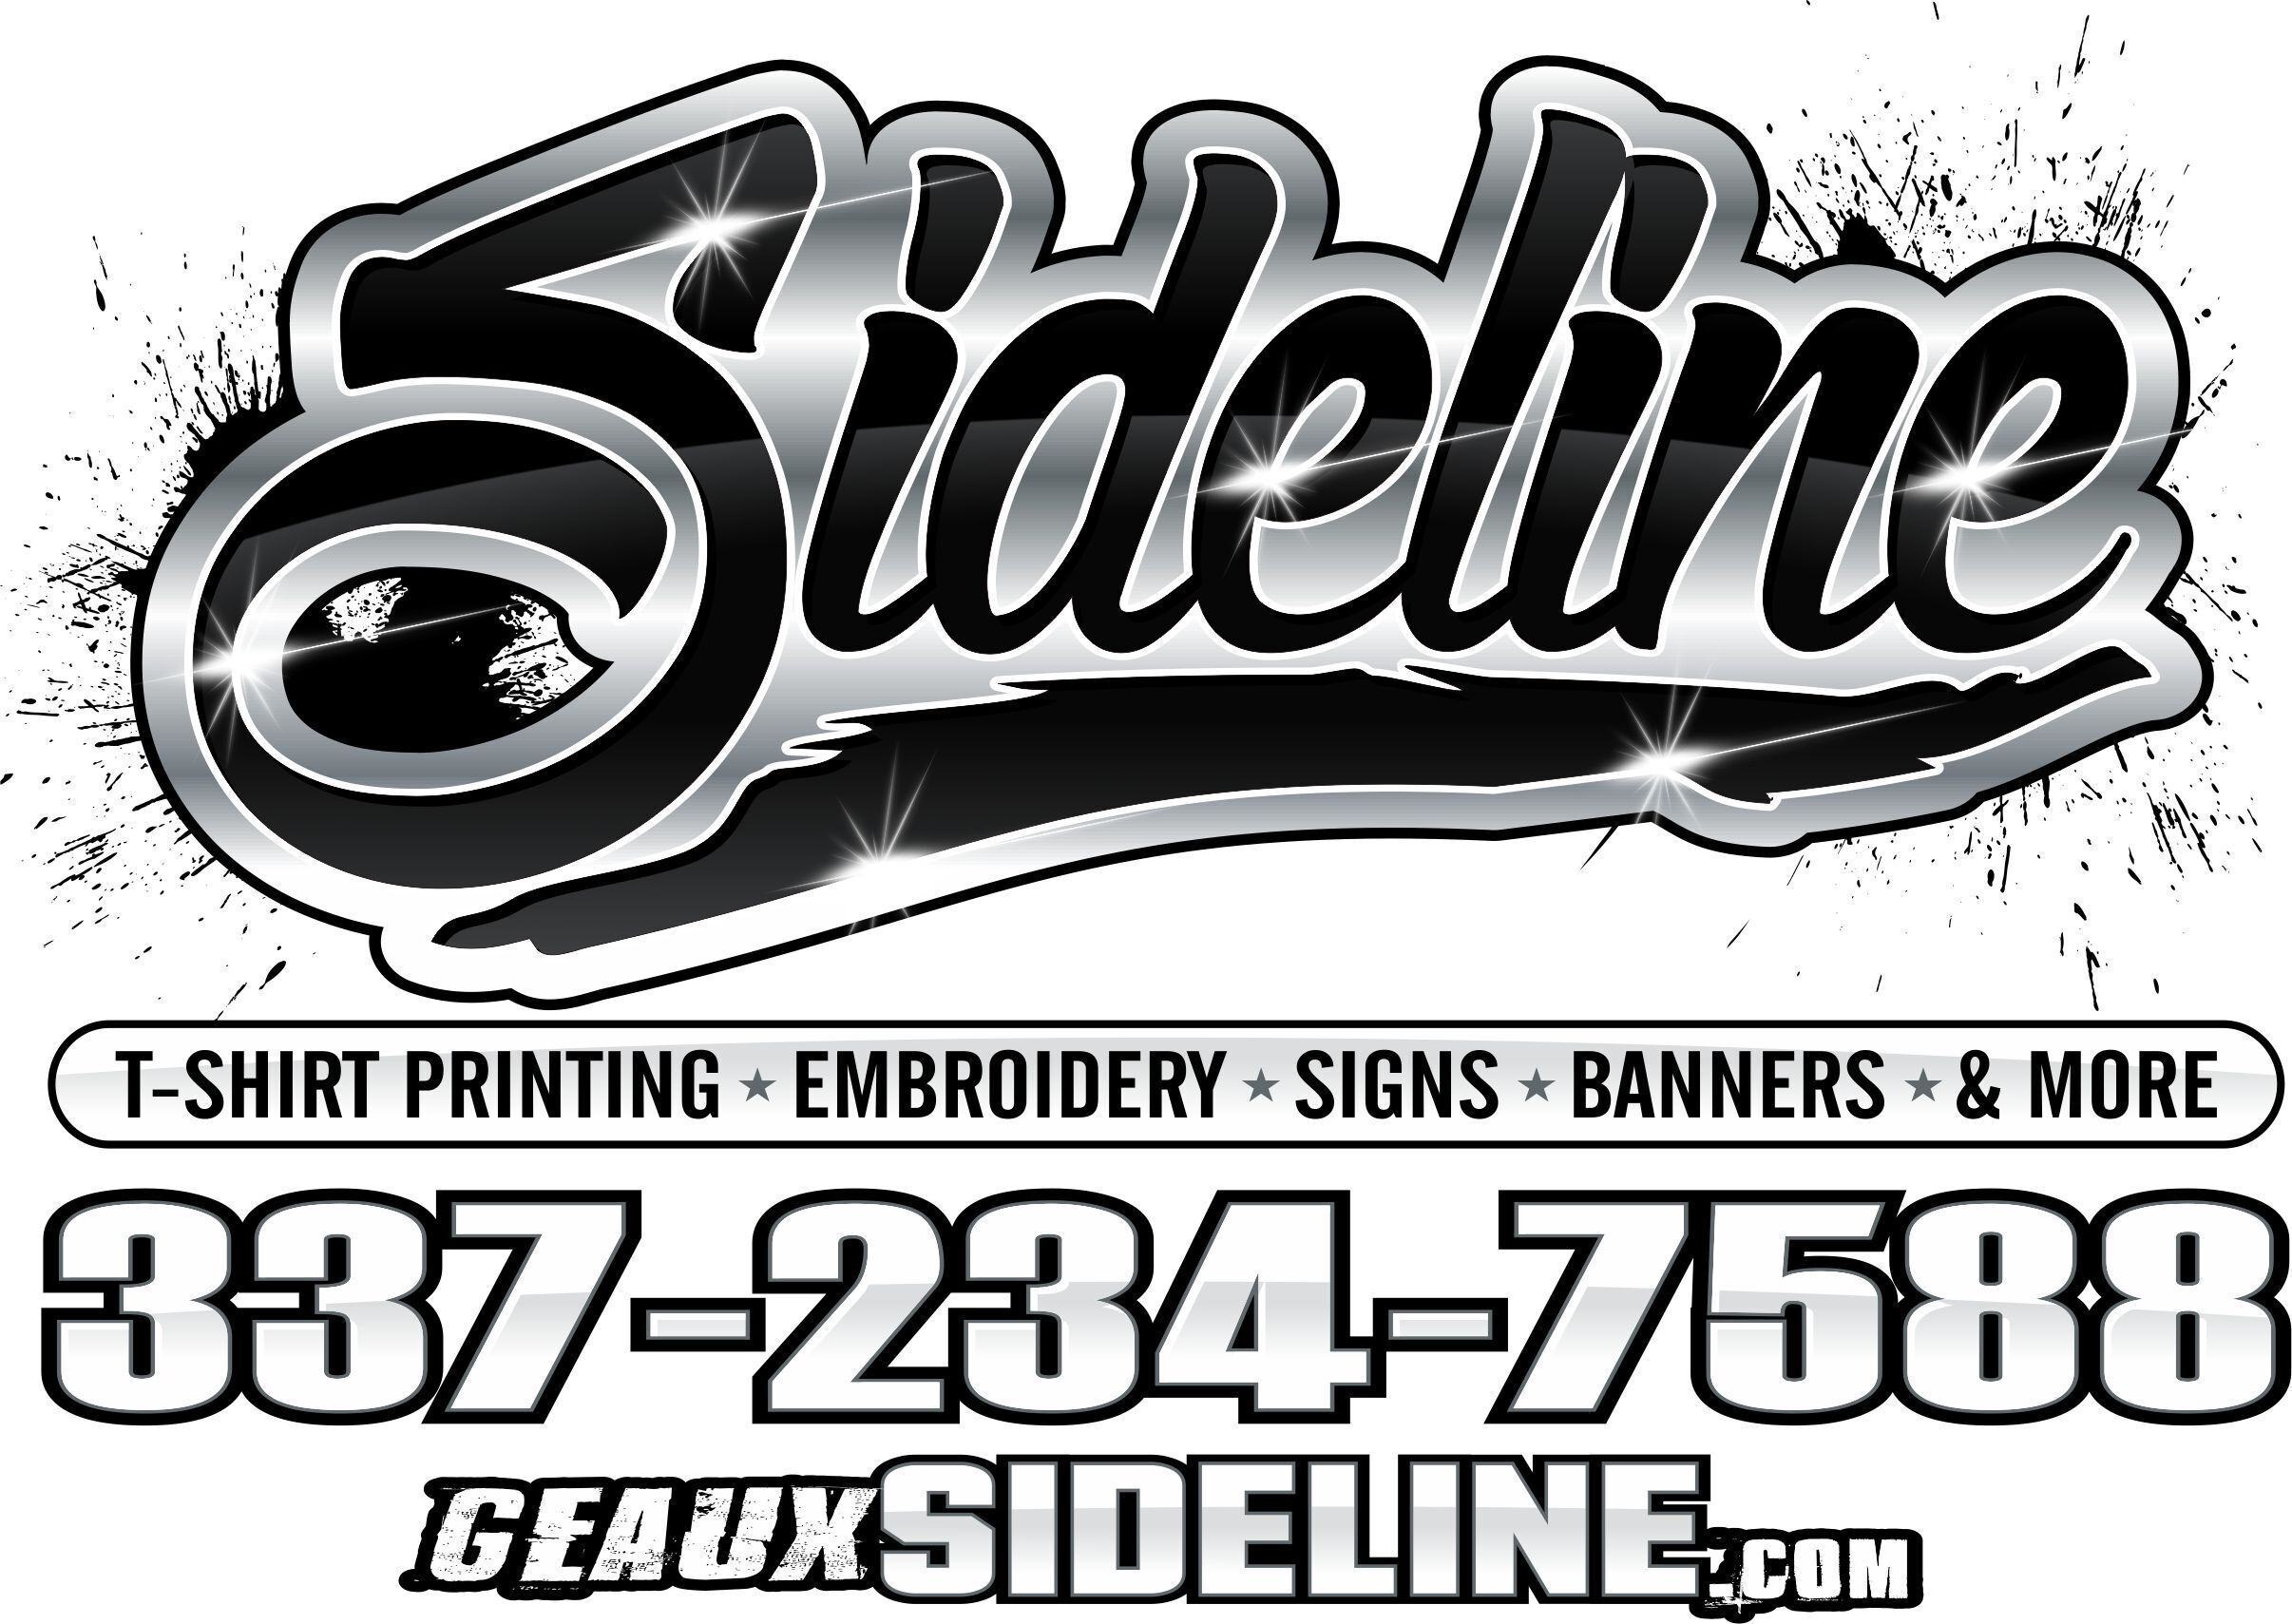 Sideline Sports & Screening